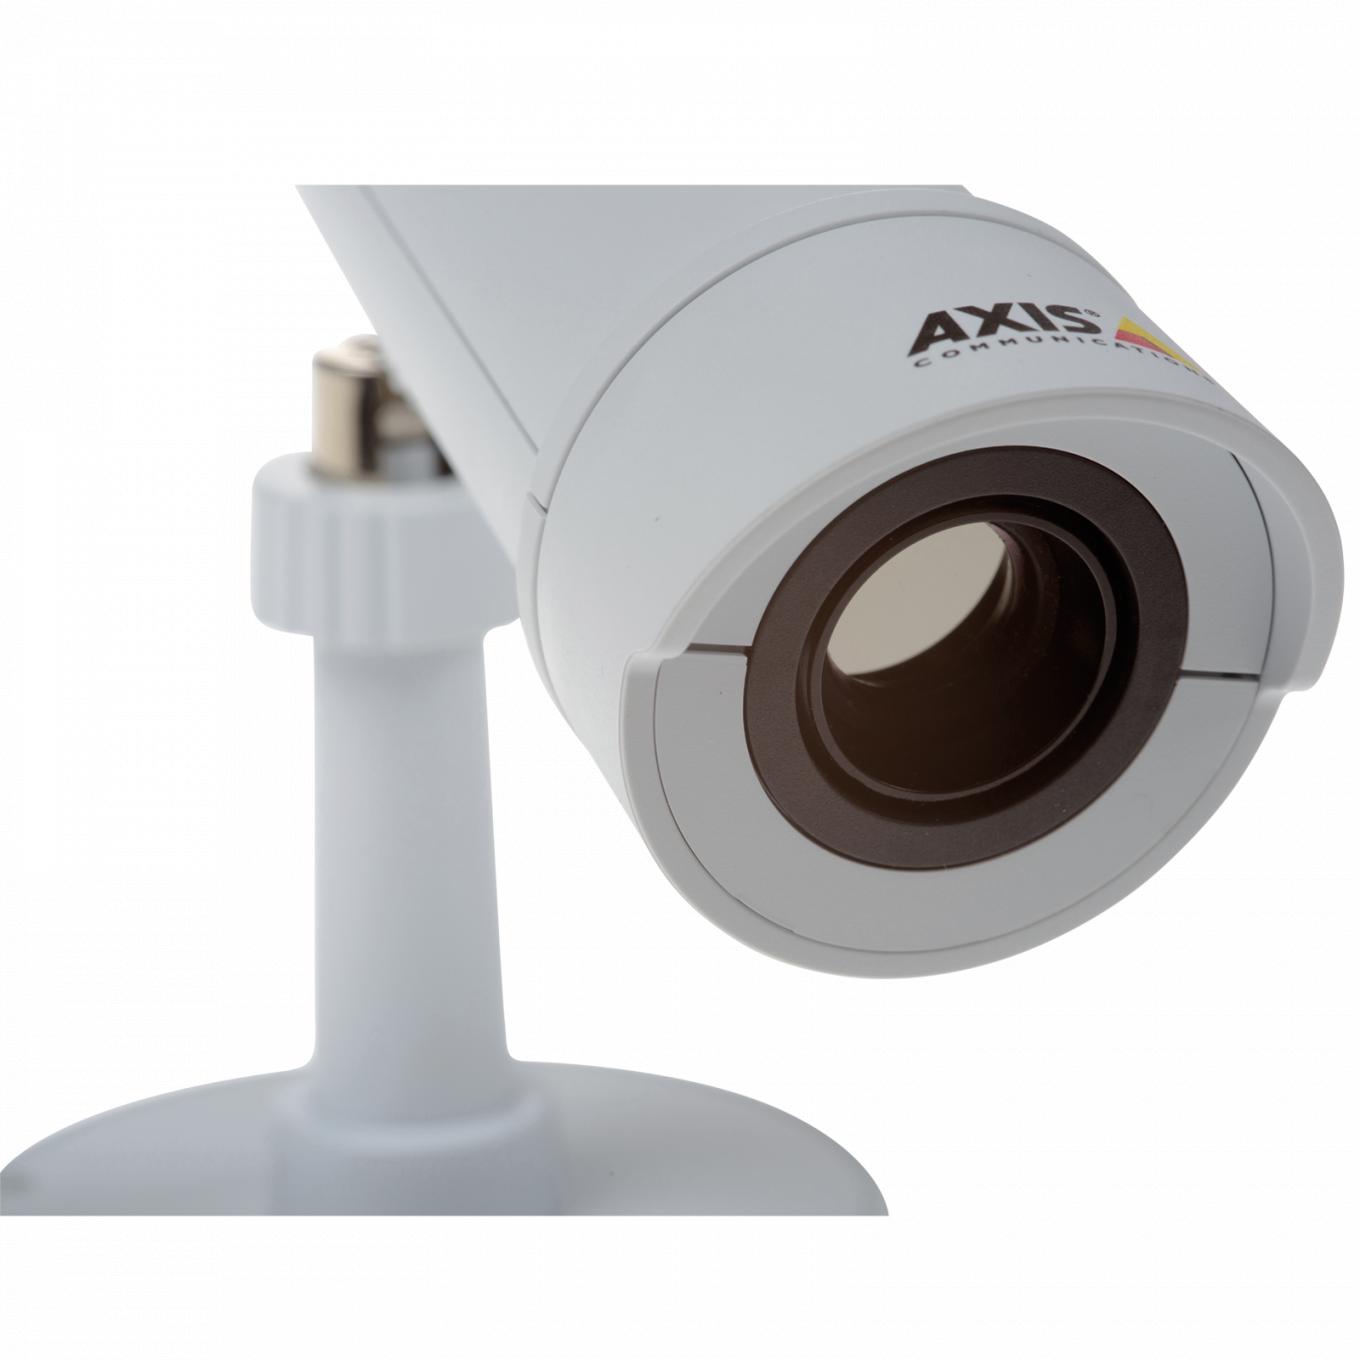 Zbliżenie na kamerę AXIS P1280-E Thermal Network Camera.